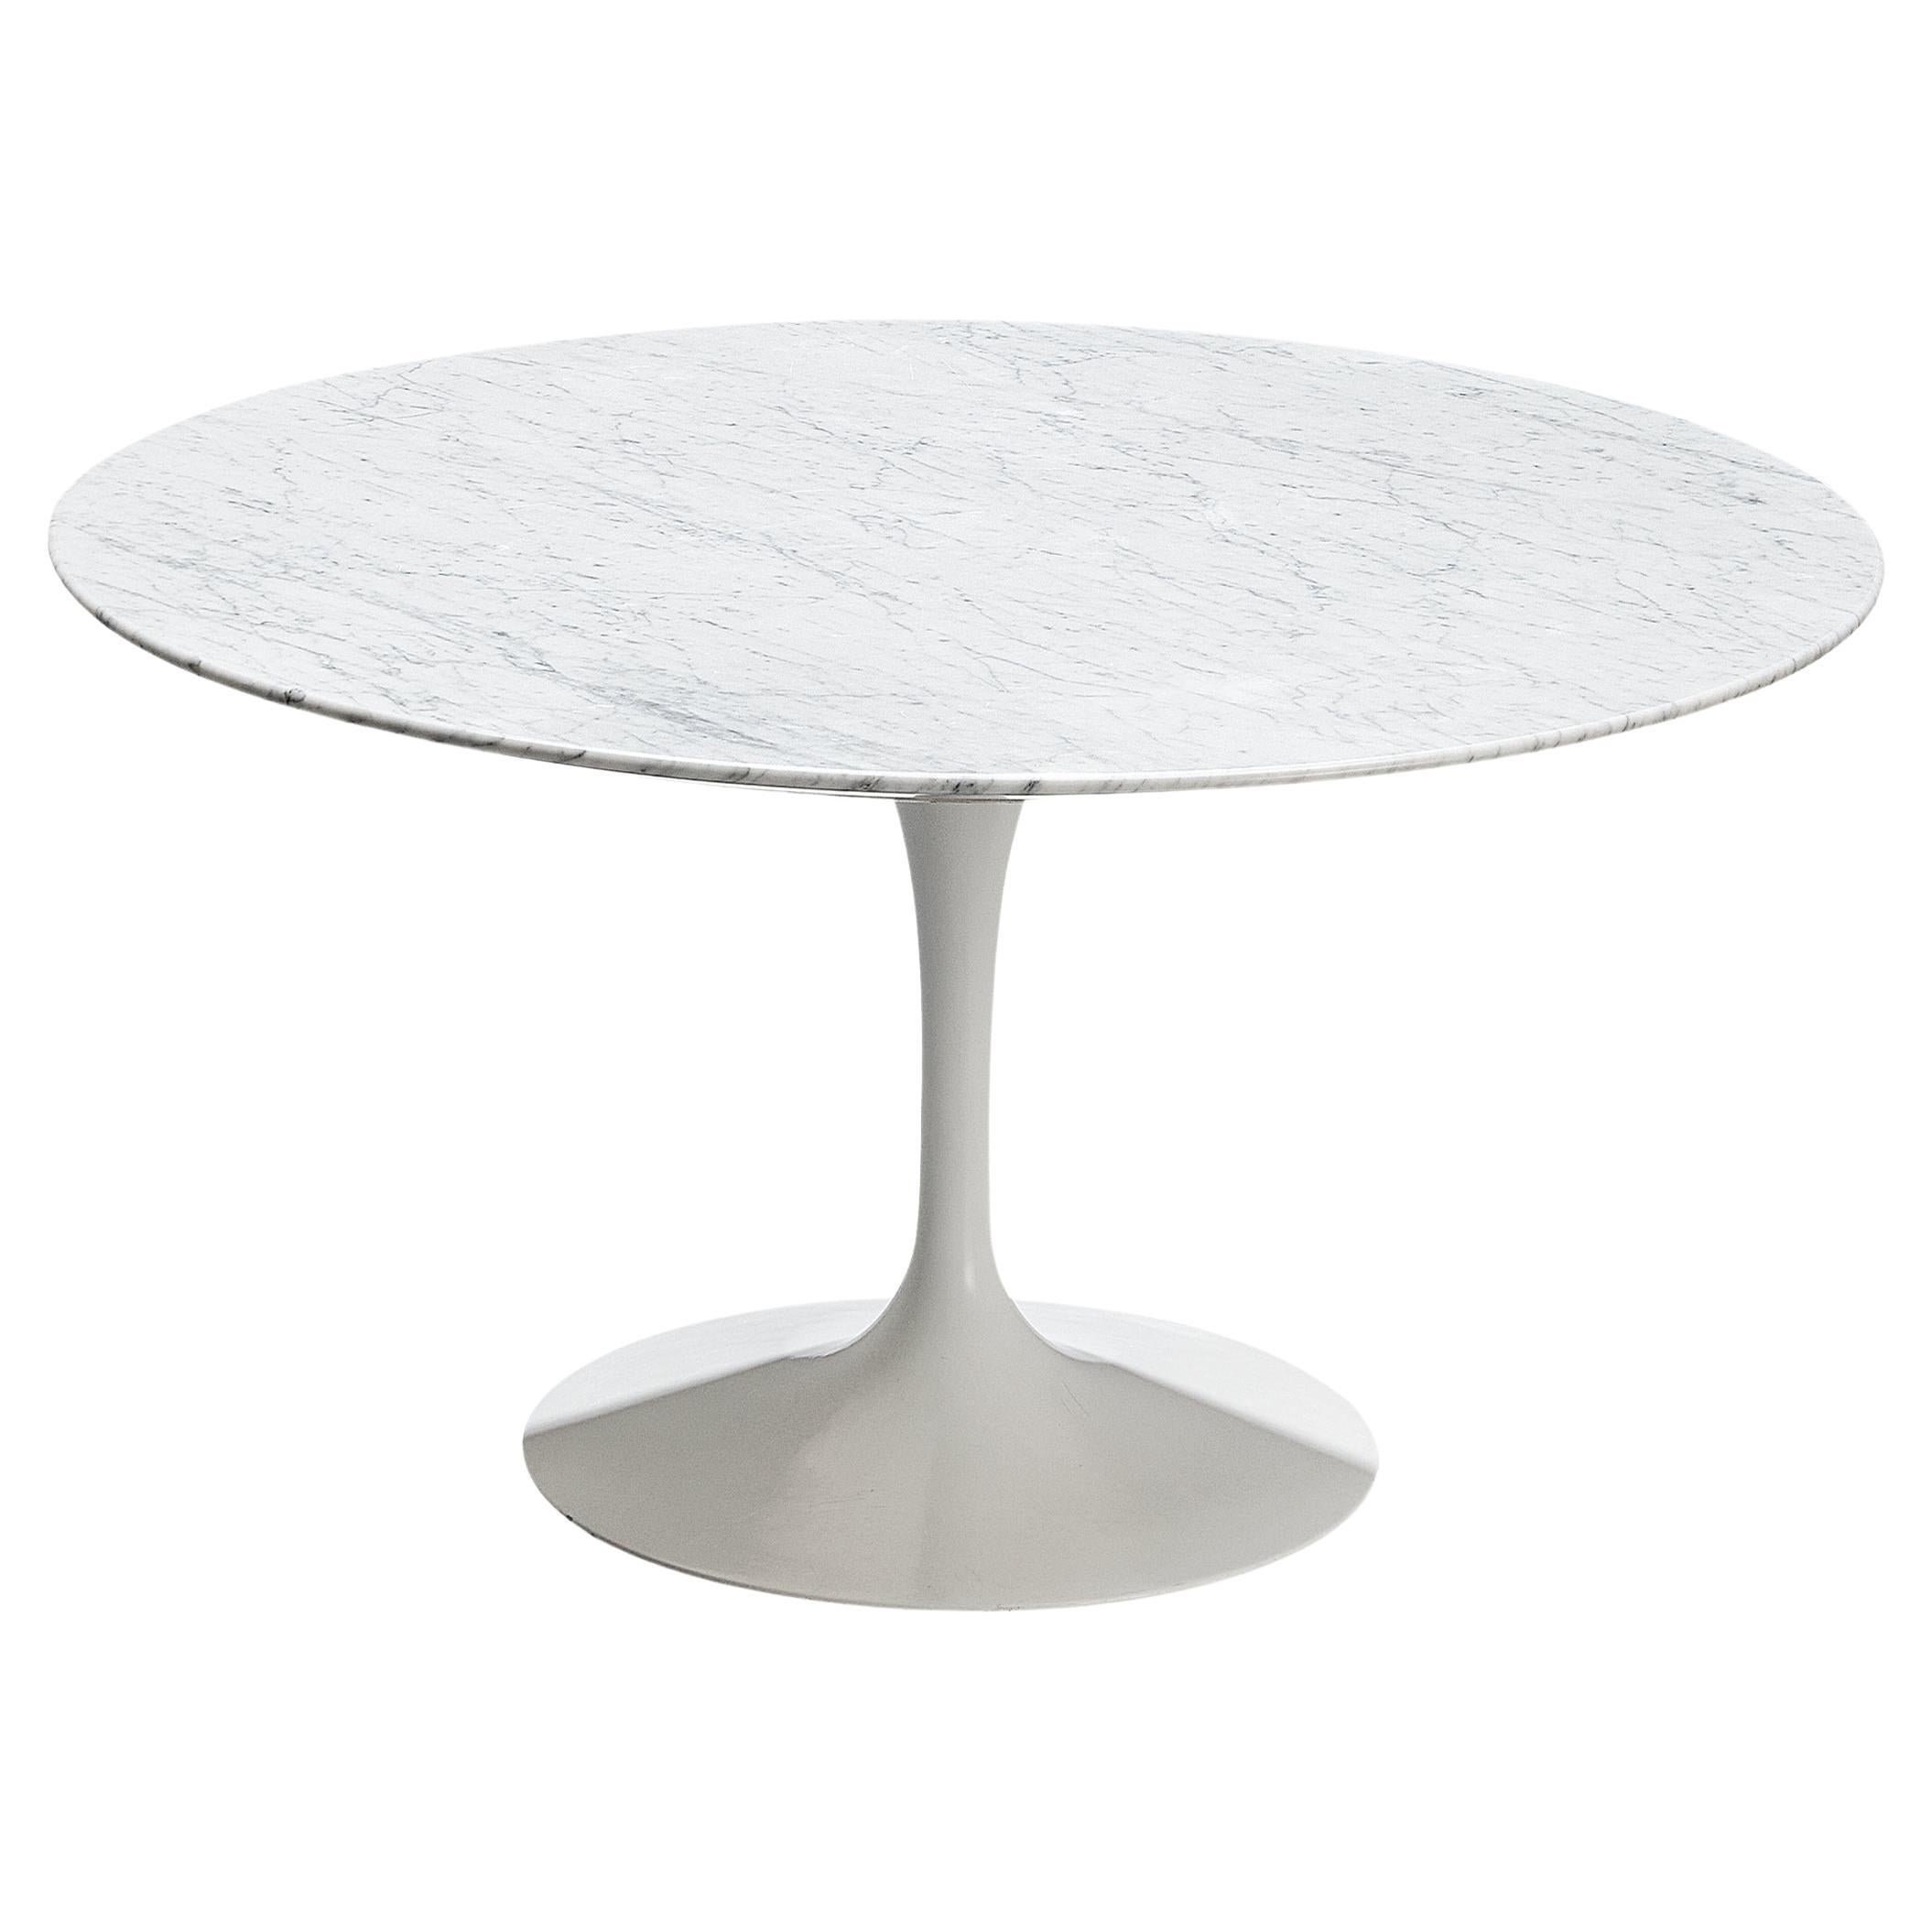 Eero Saarinen for Knoll 'Tulip' Dining Table with Carrara Marble Top 